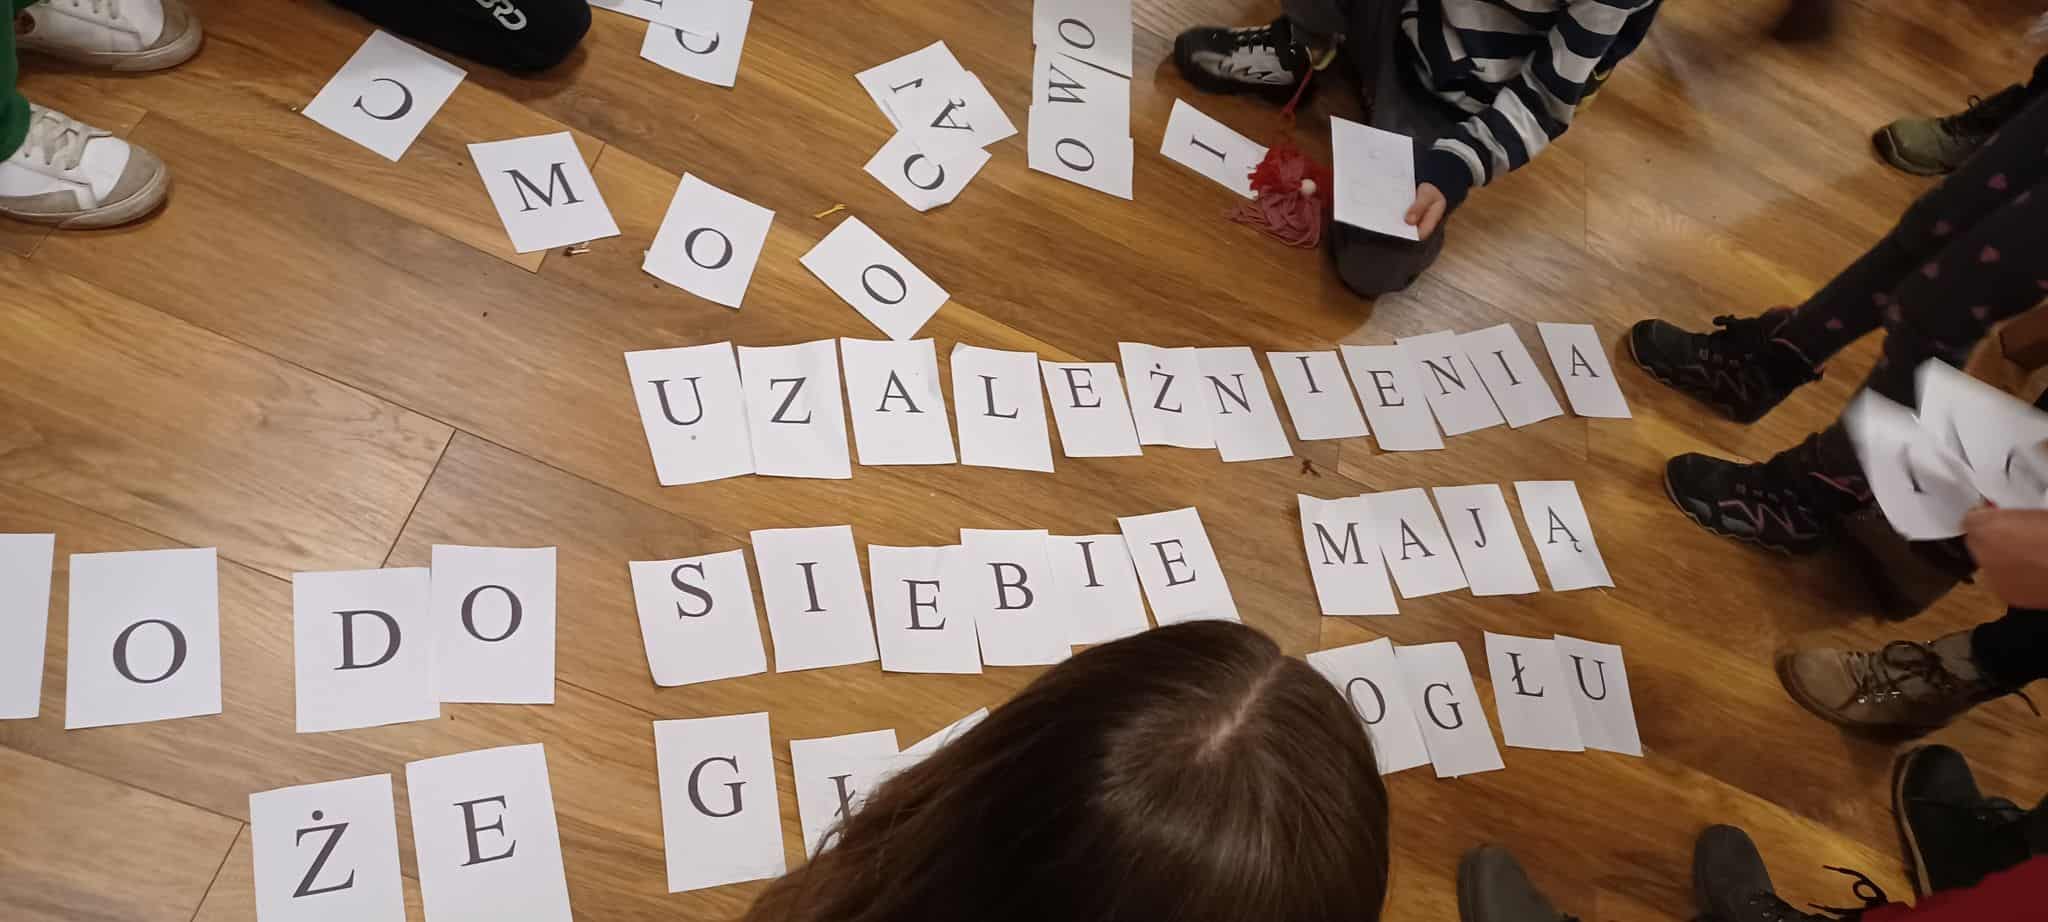 kartki z literami drukowanymi rozsypane po podłodze, dzieci układają z nich hasło